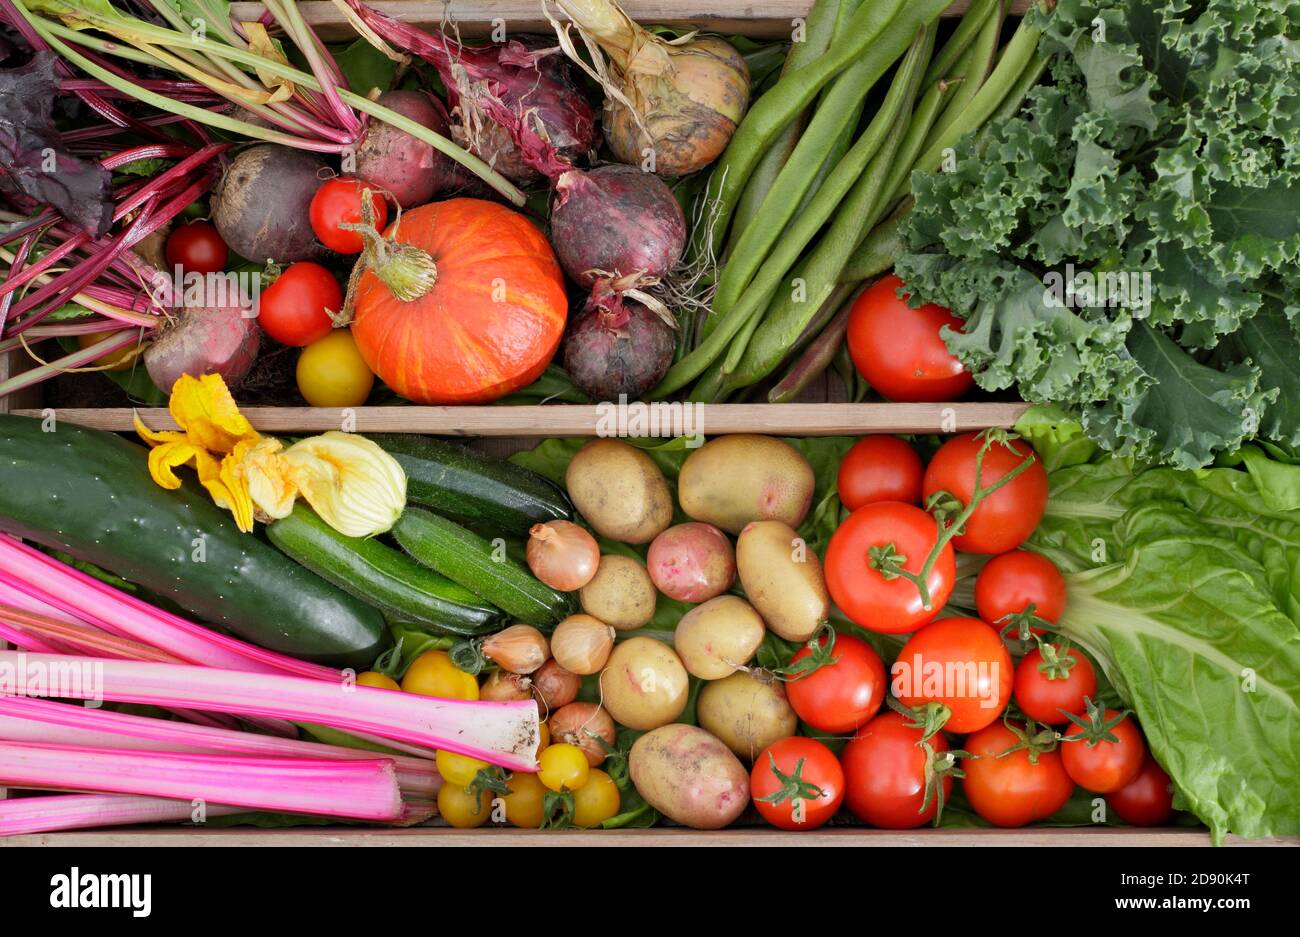 Hausgemachte Produkte in einem britischen Garten angebaut. Mangold, Gurken, Zucchini, Kürbis, Läuferbohnen, Tomaten, Grünkohl, Rote Beete, Zwiebeln, Kartoffeln. Stockfoto